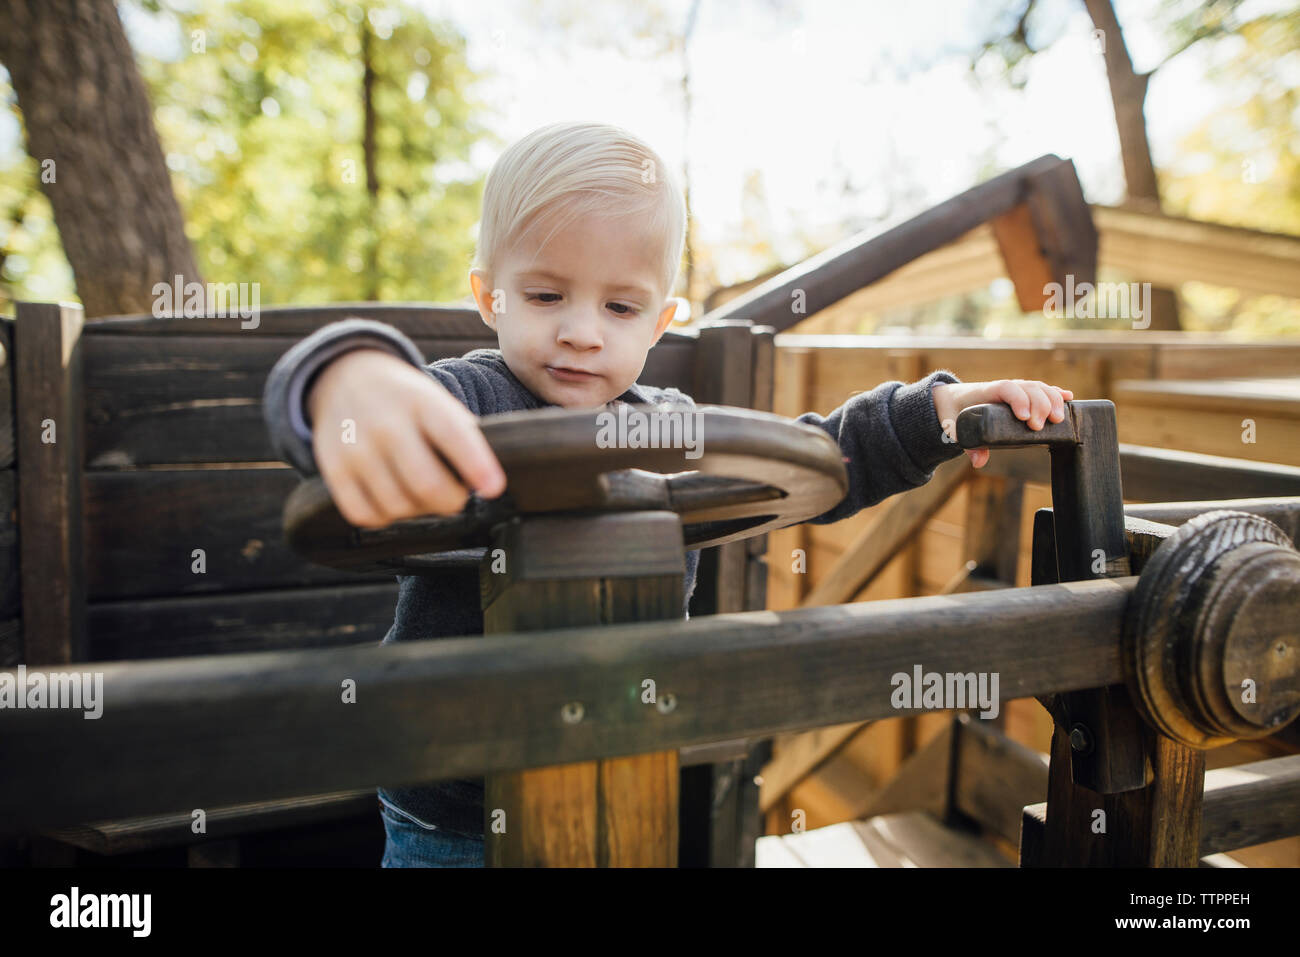 Süße Junge spielt auf Spielgeräte im Park Stockfoto